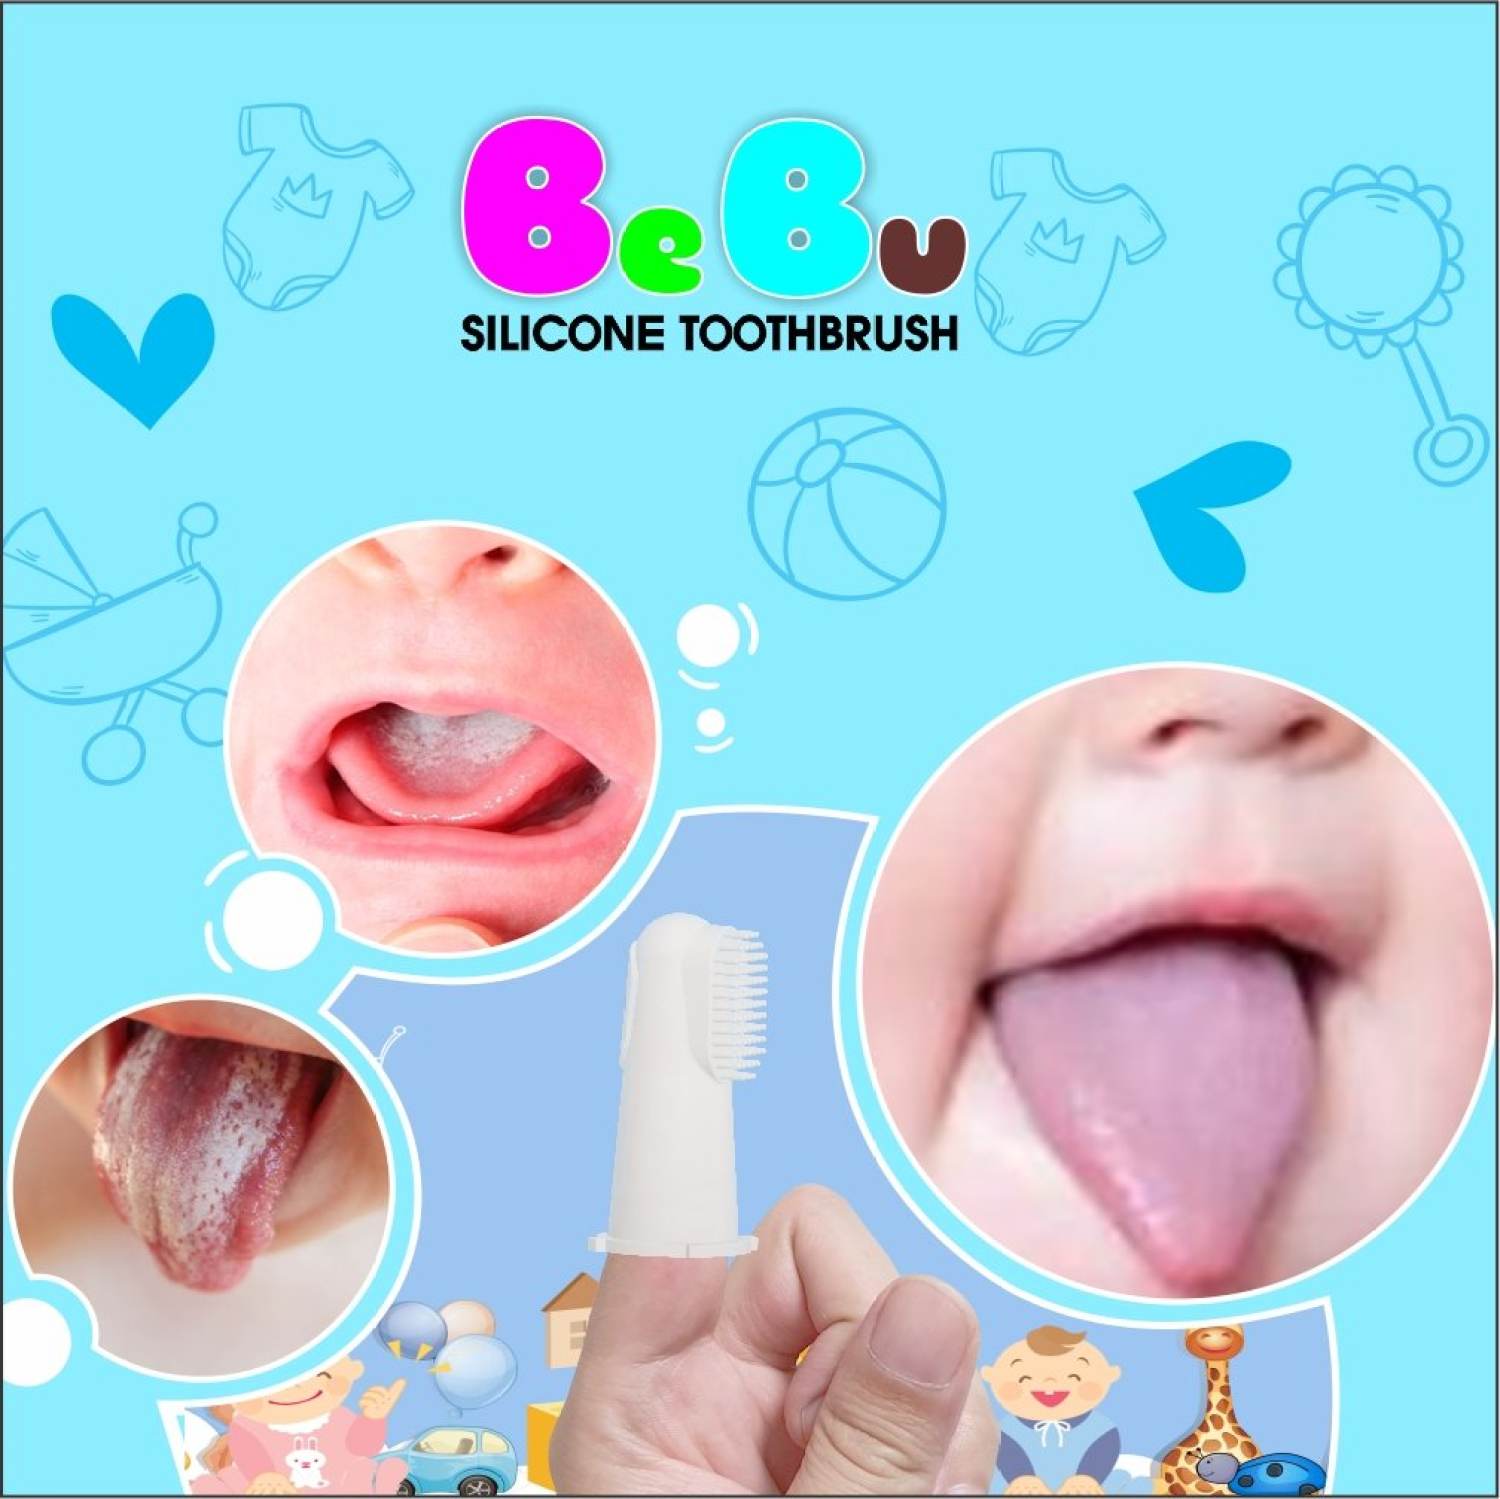 Bàn chải tưa lưỡi bebu 100% silicon y tế siêu mềm lồng ngón tay - ảnh sản phẩm 1